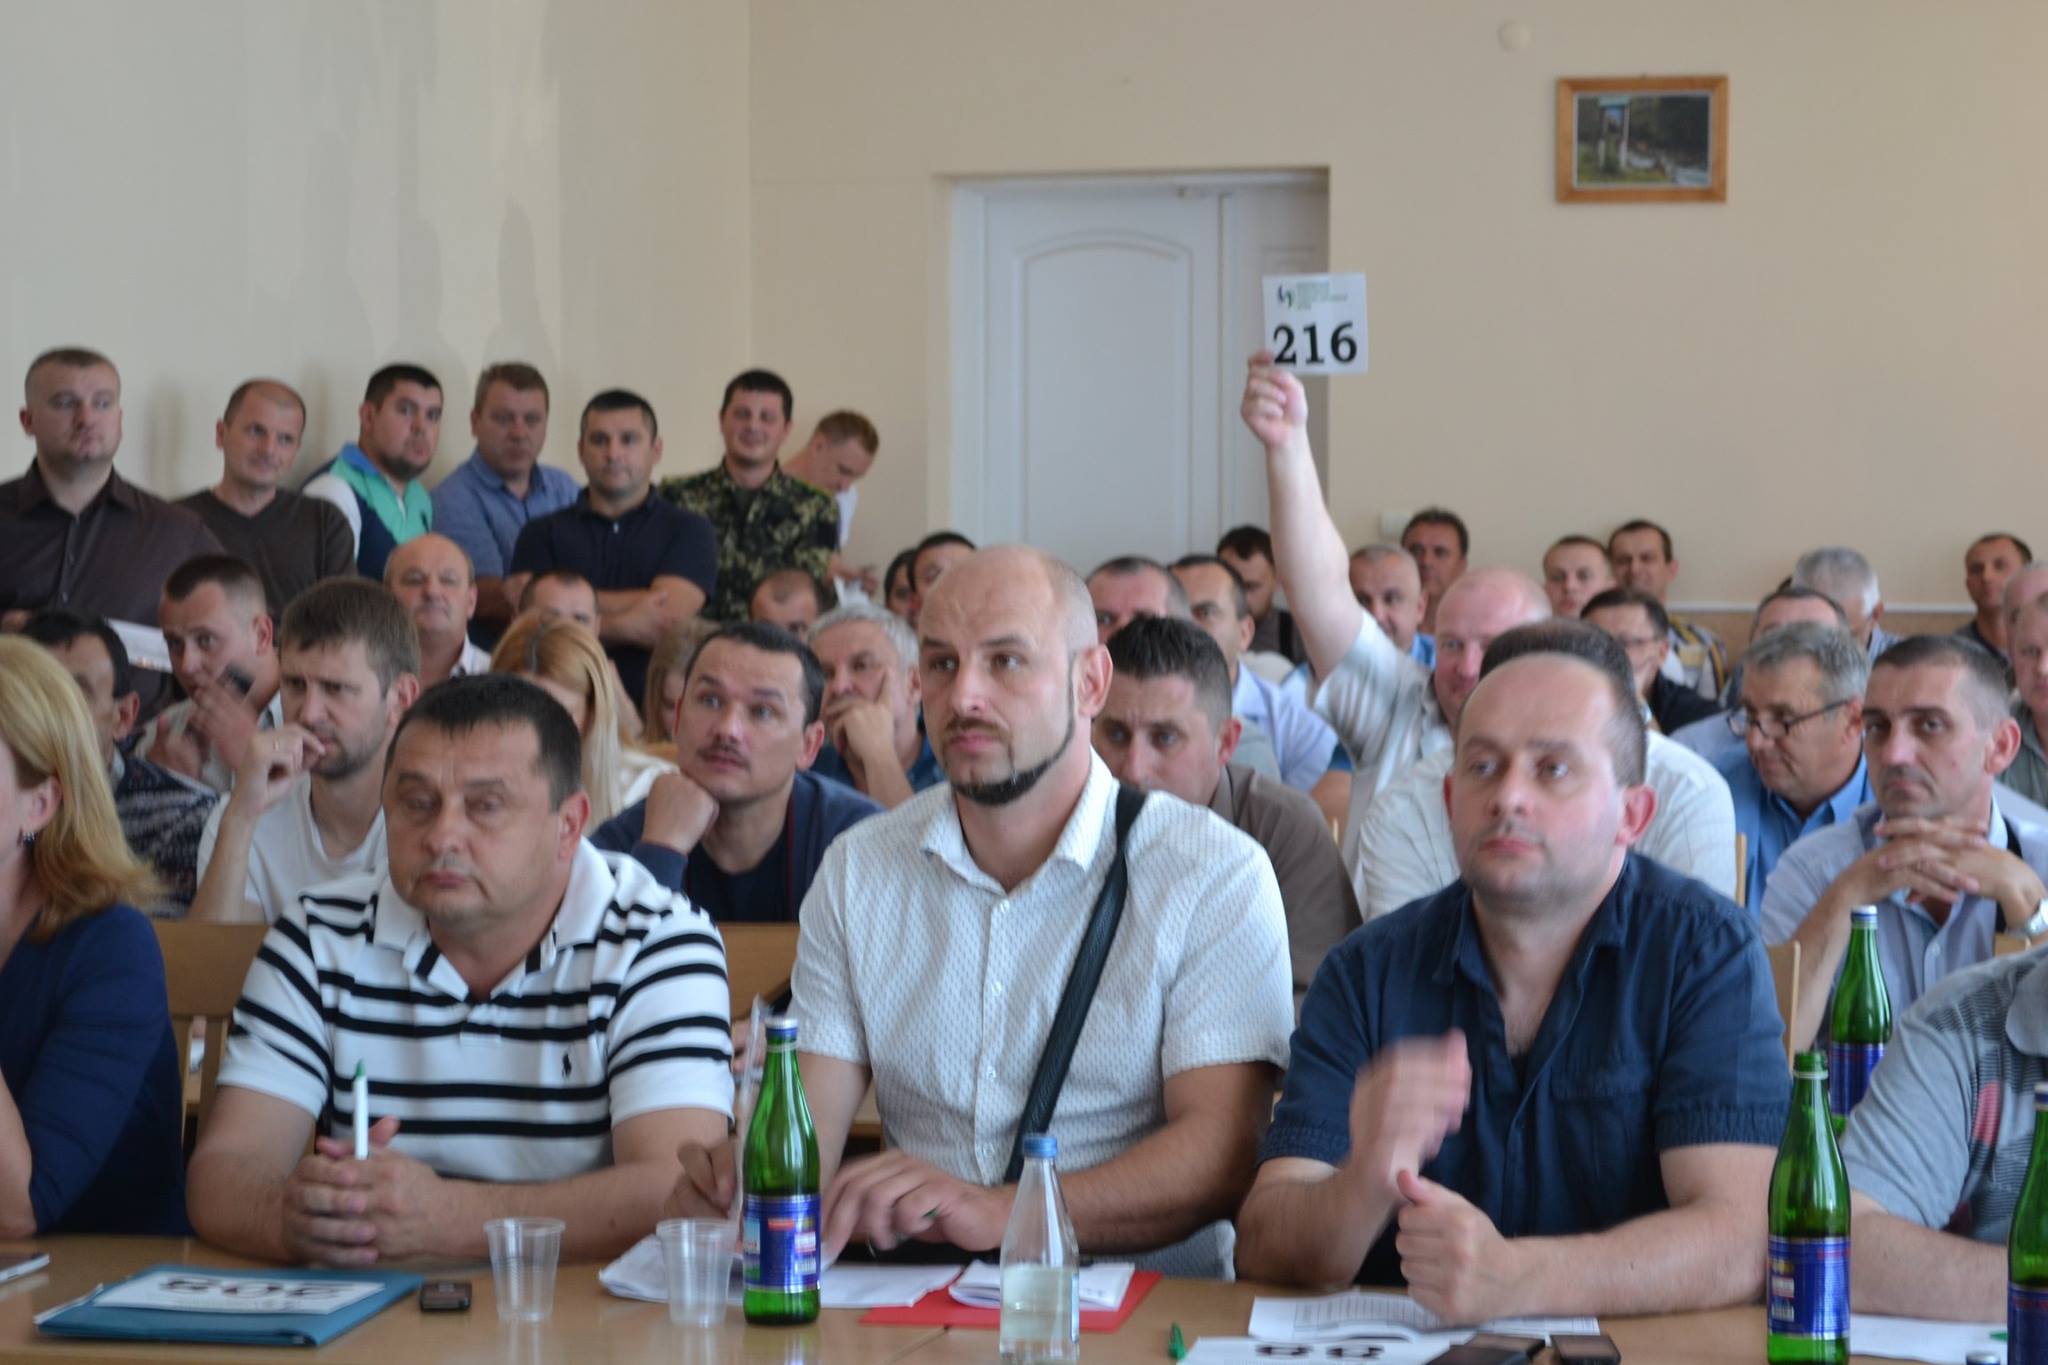 Во вторник, 12 июля, в помещении актового зала Закарпатского областного управления лесного и охотничьего хозяйства состоялись дополнительные аукционные торги лесоматериалами.